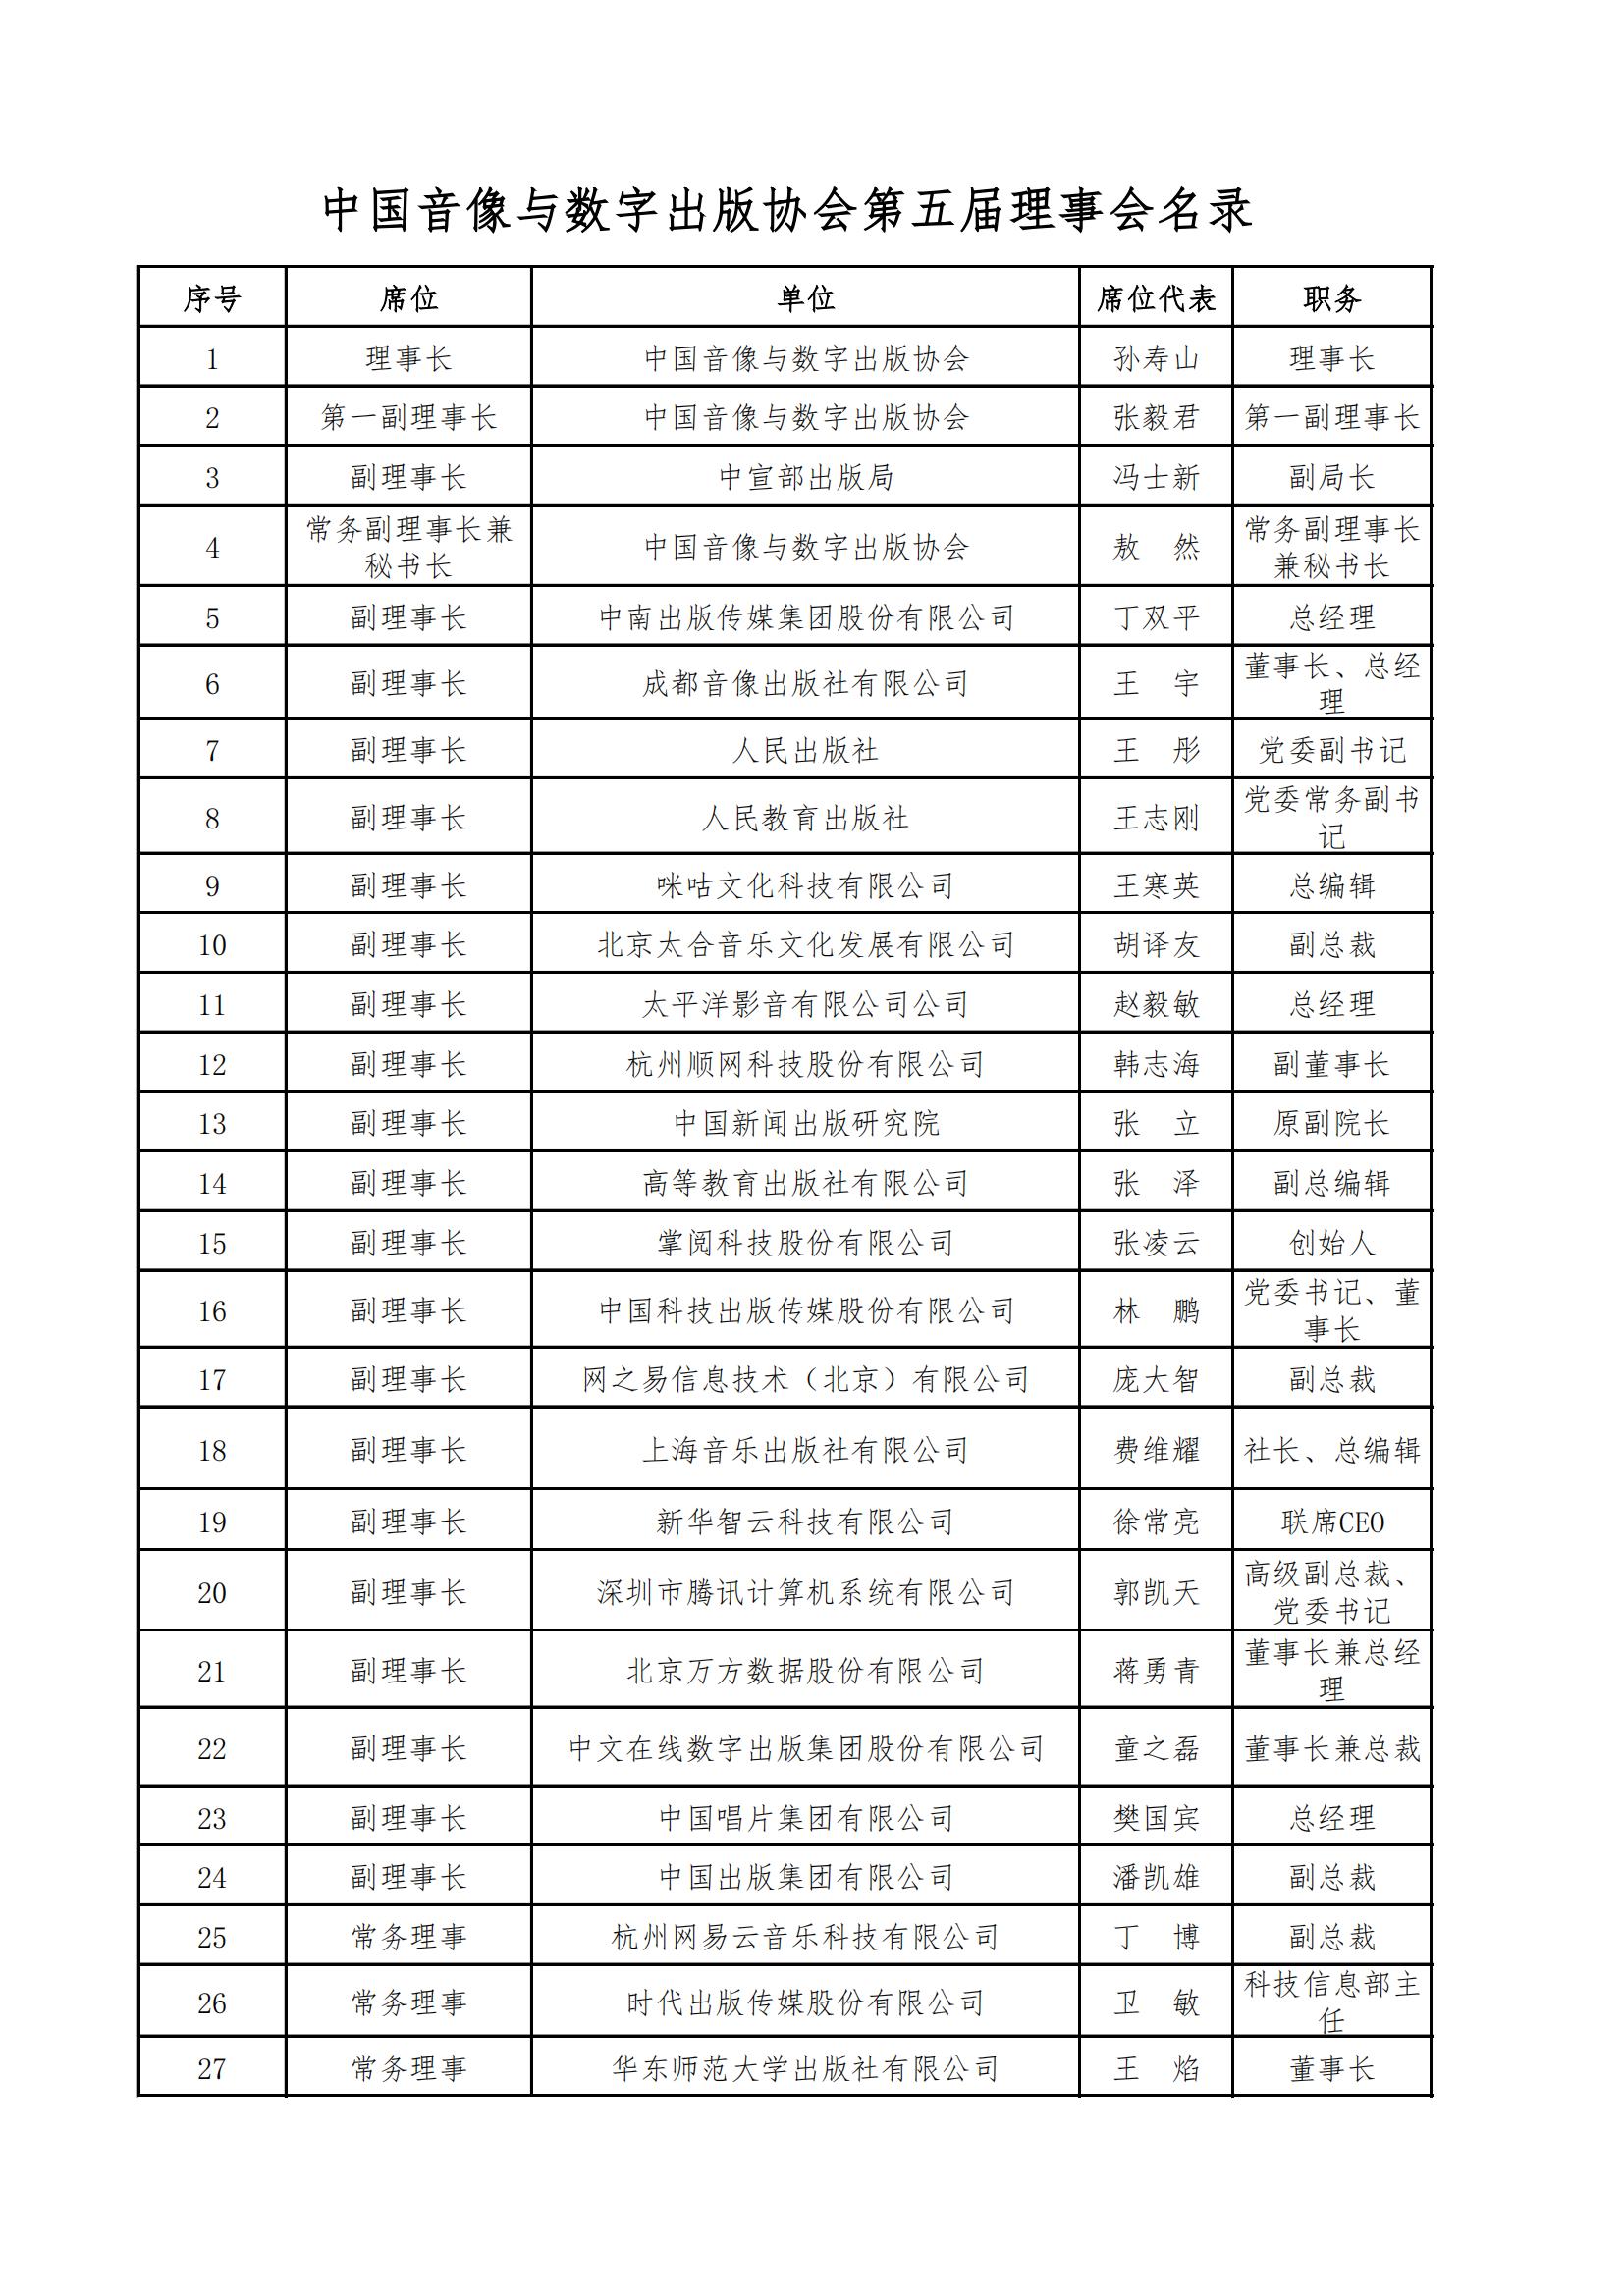 中國音像與數字出版協會第五屆理事會名錄_00.jpg